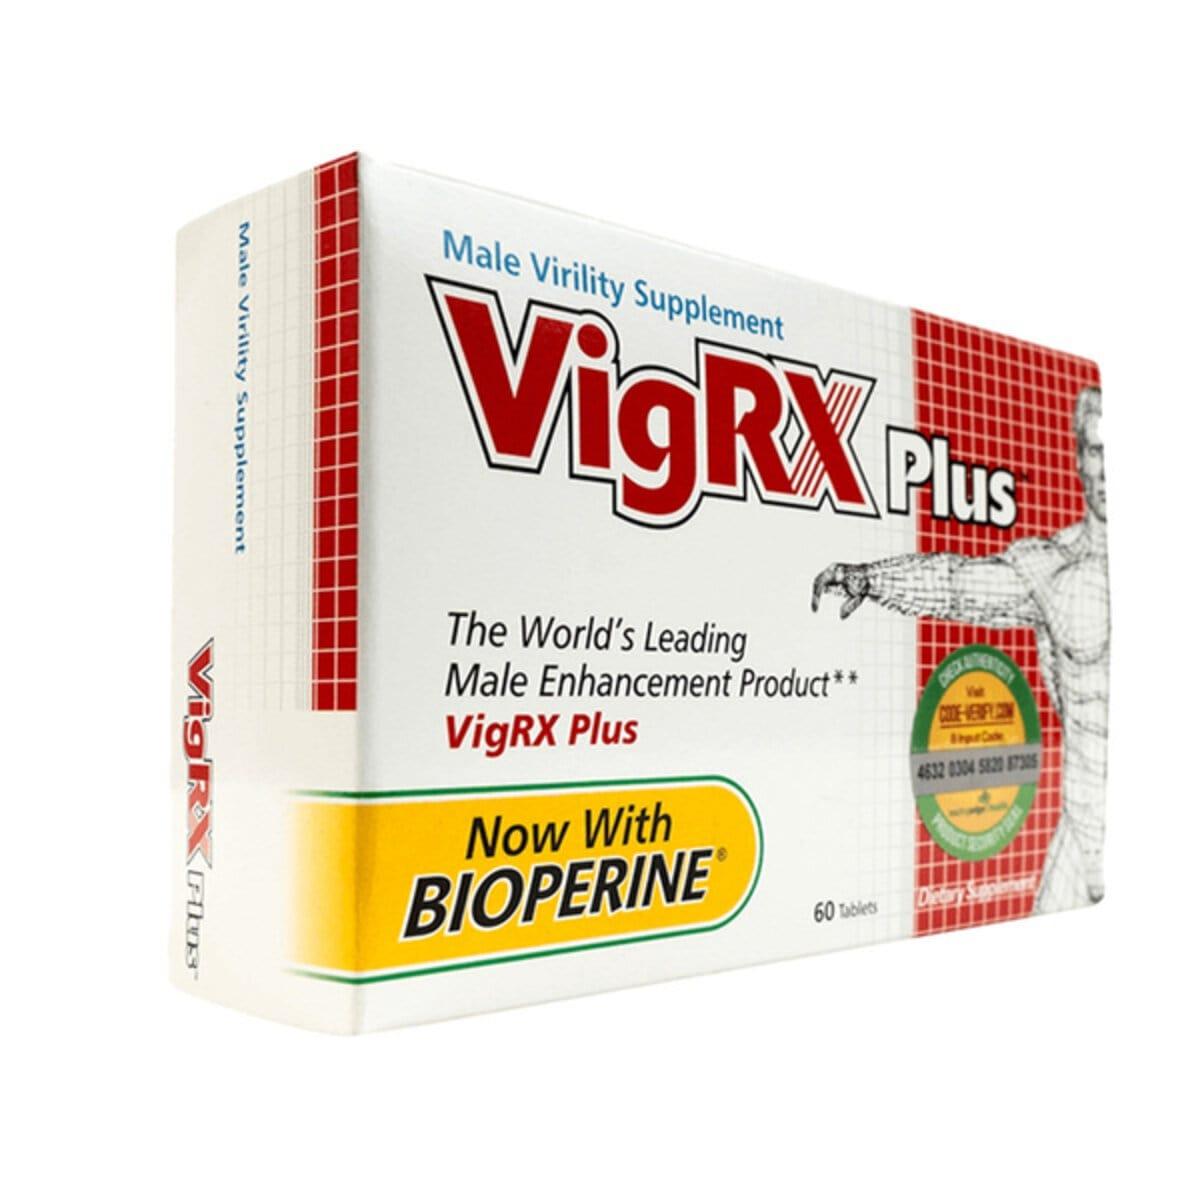  vigrx plus where to buy